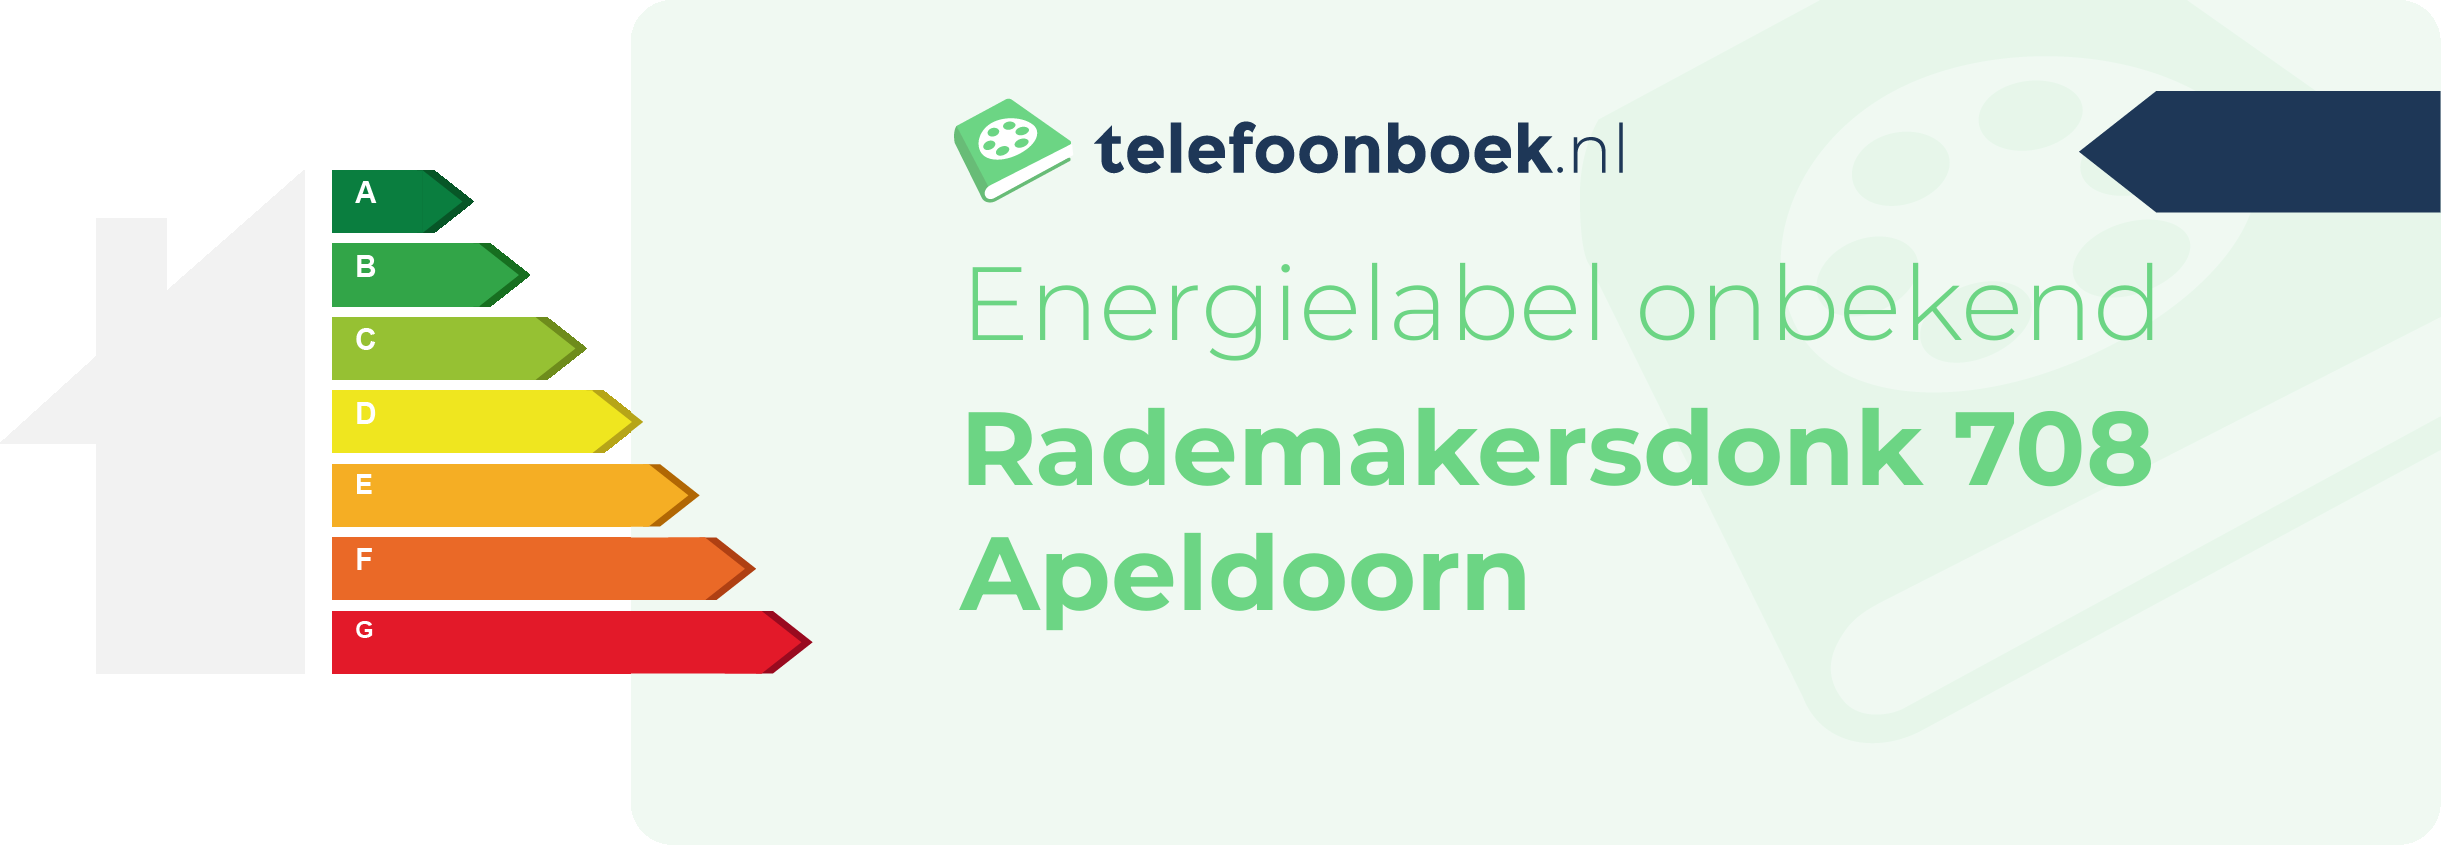 Energielabel Rademakersdonk 708 Apeldoorn